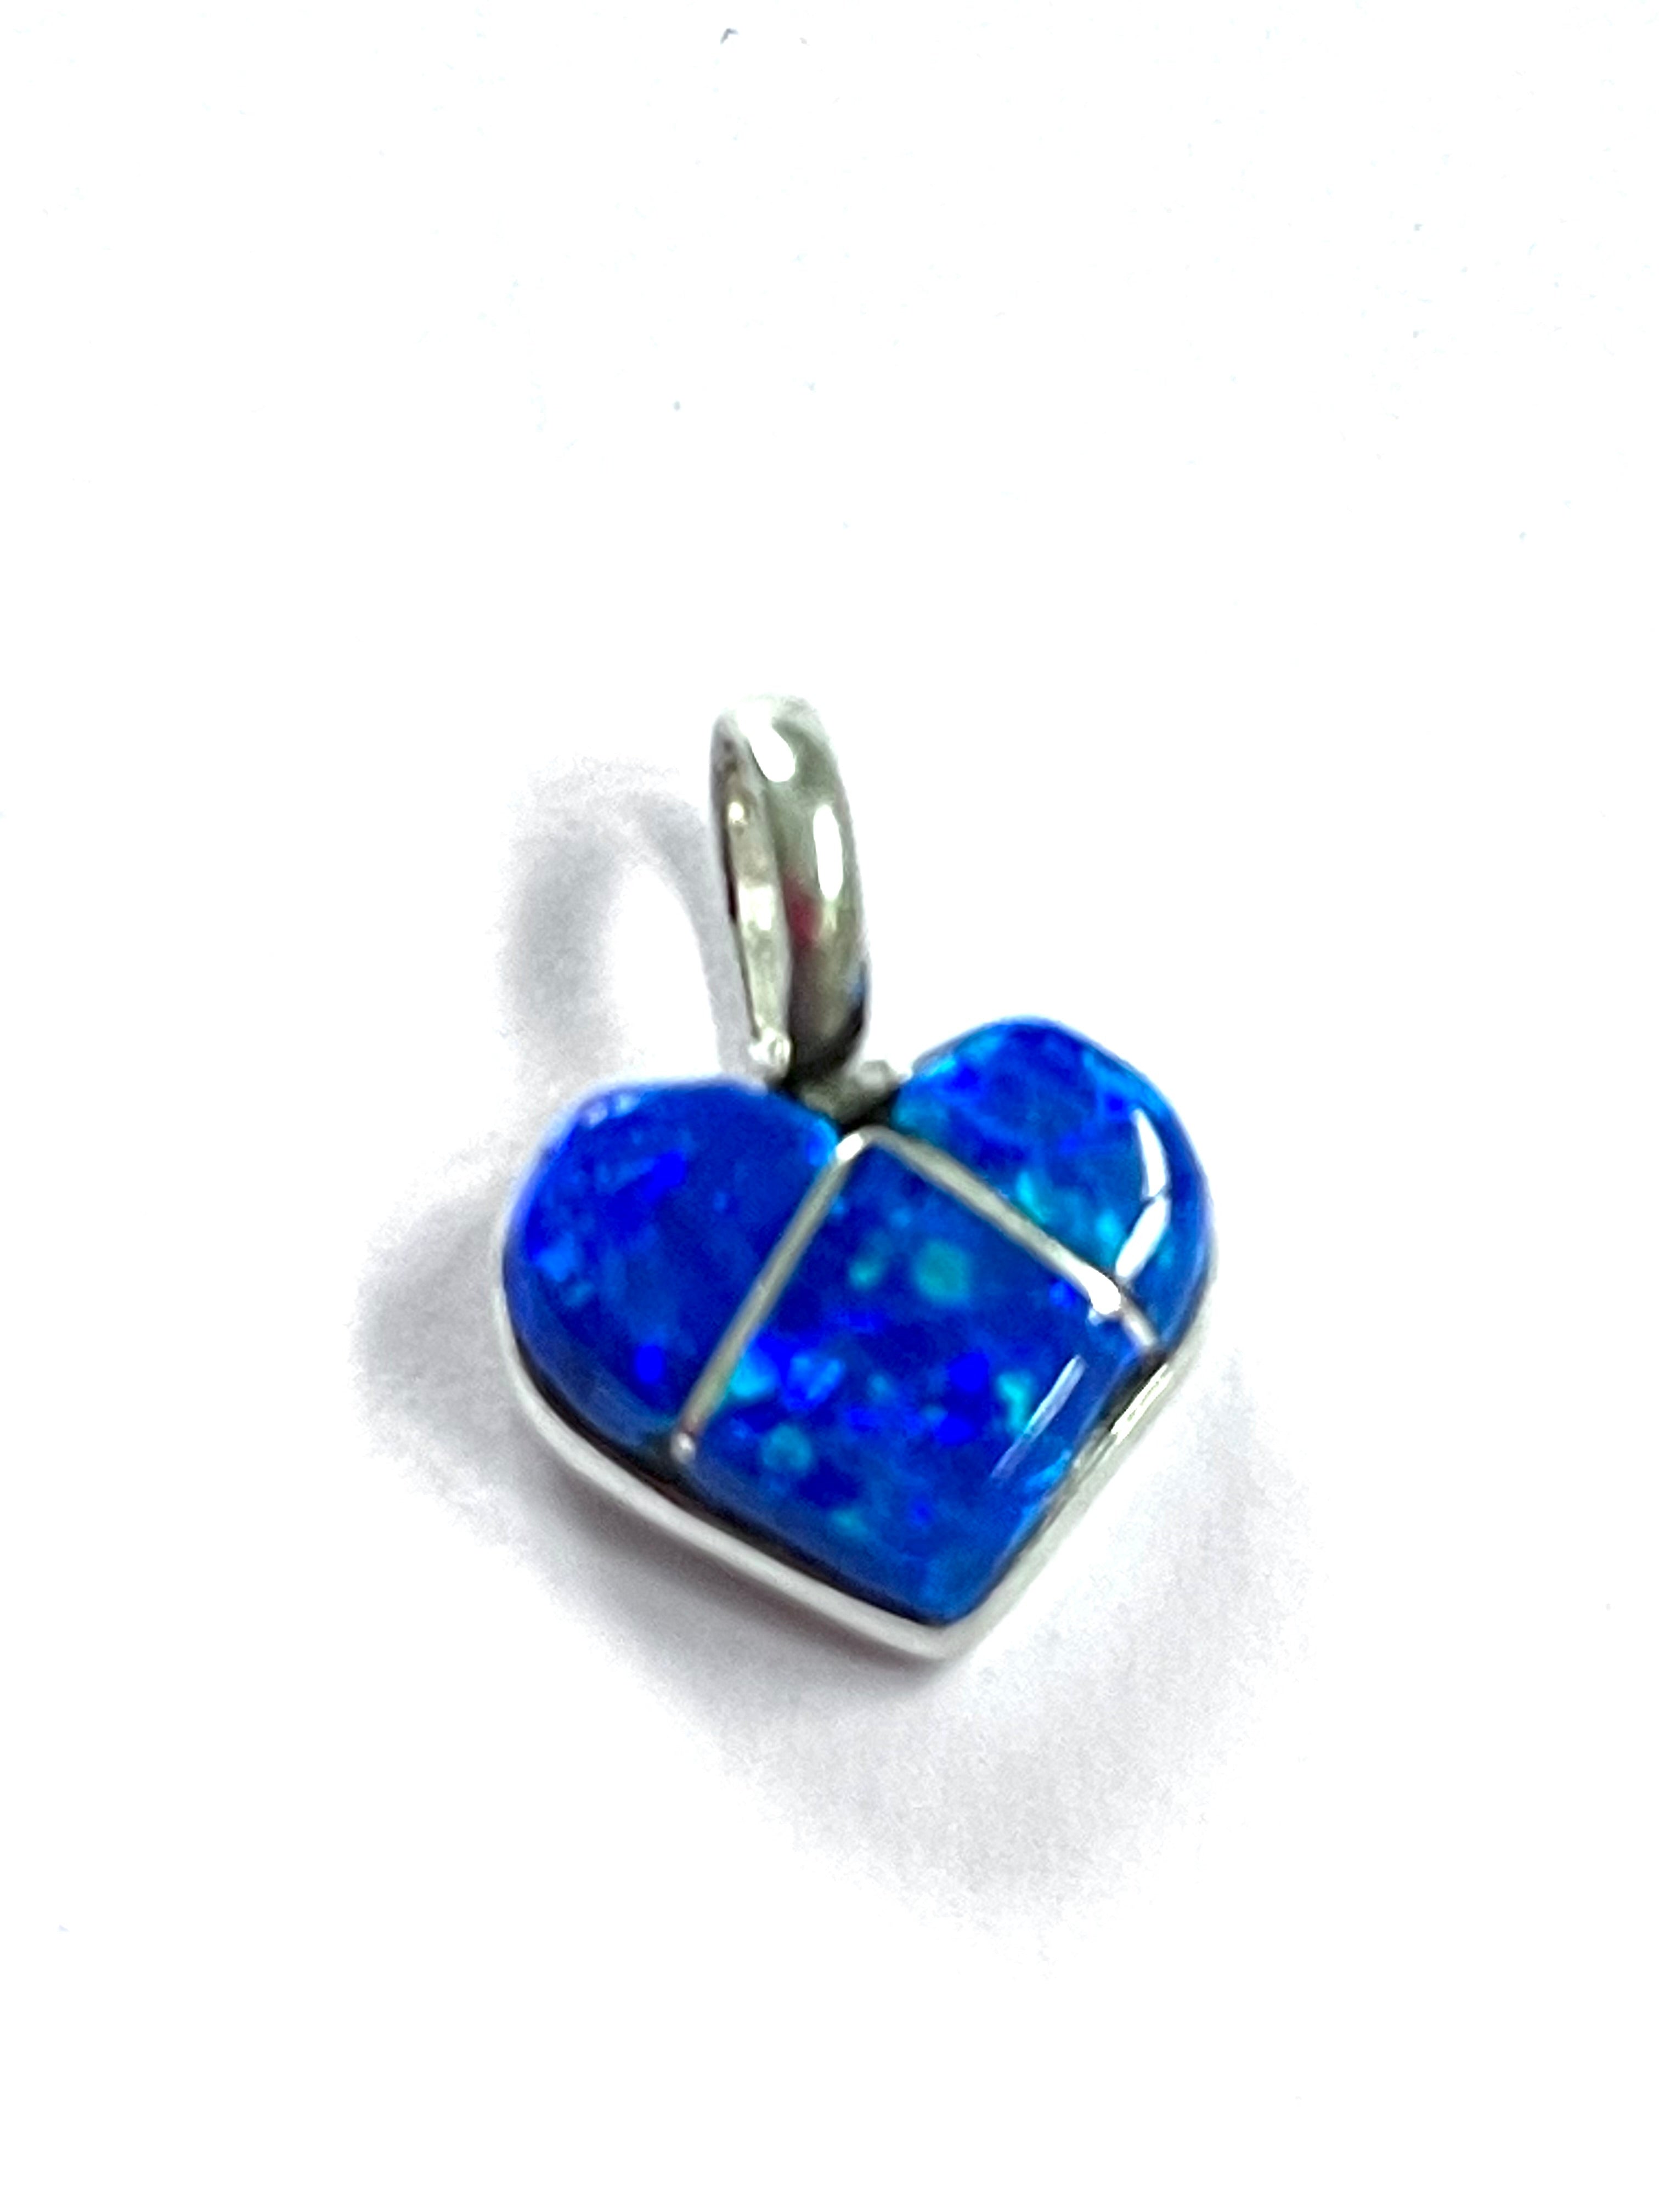 Opal heart pendent